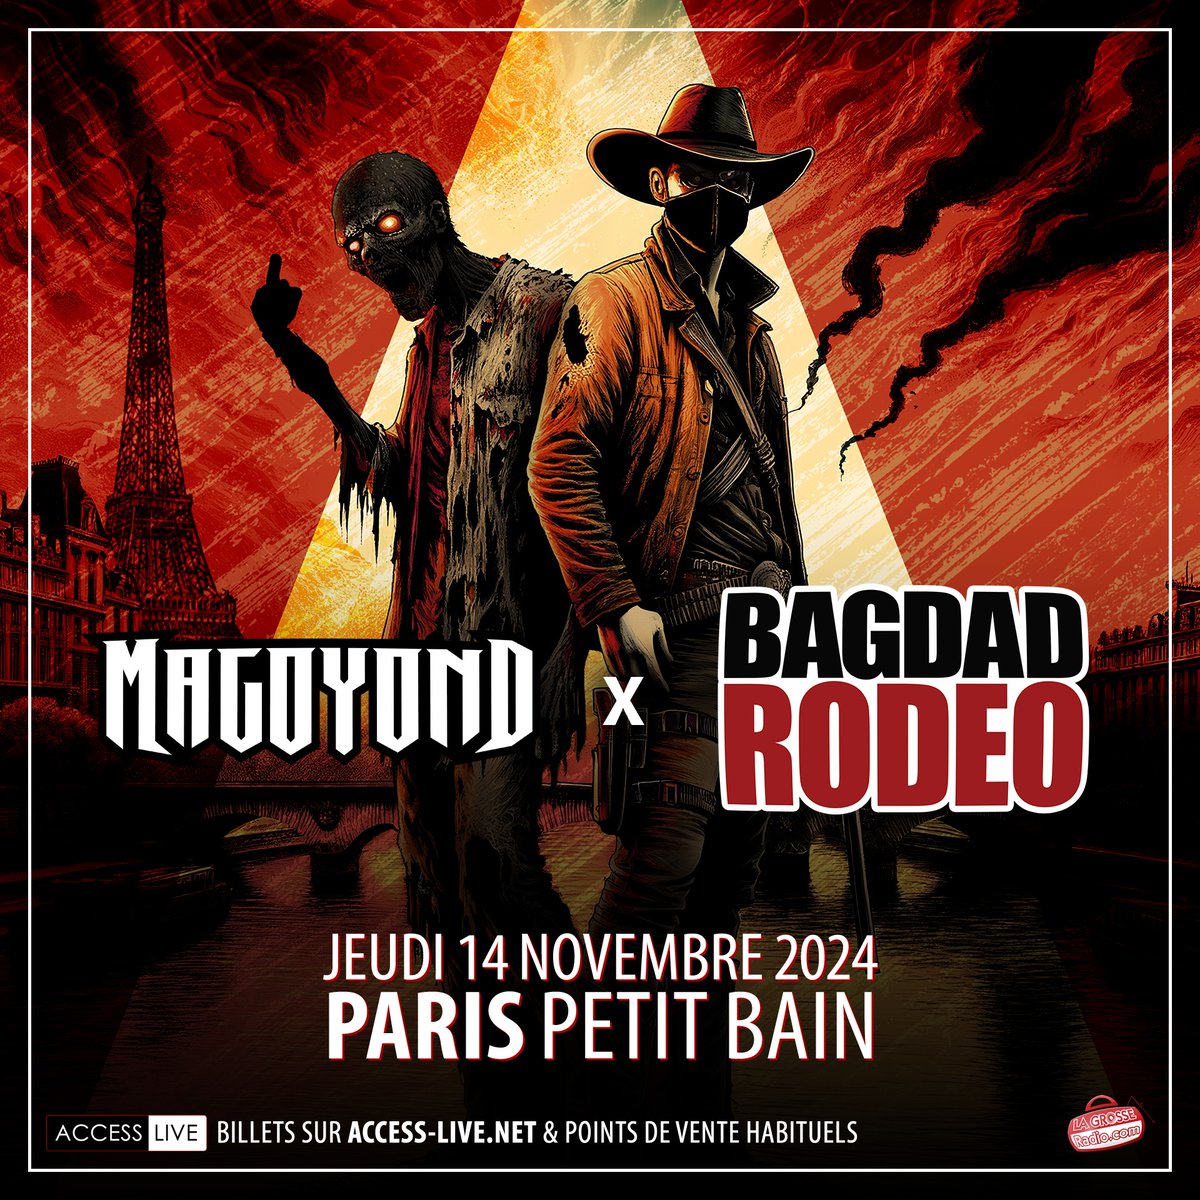 Bagdad Rodeo - Magoyond al Petit Bain Tickets